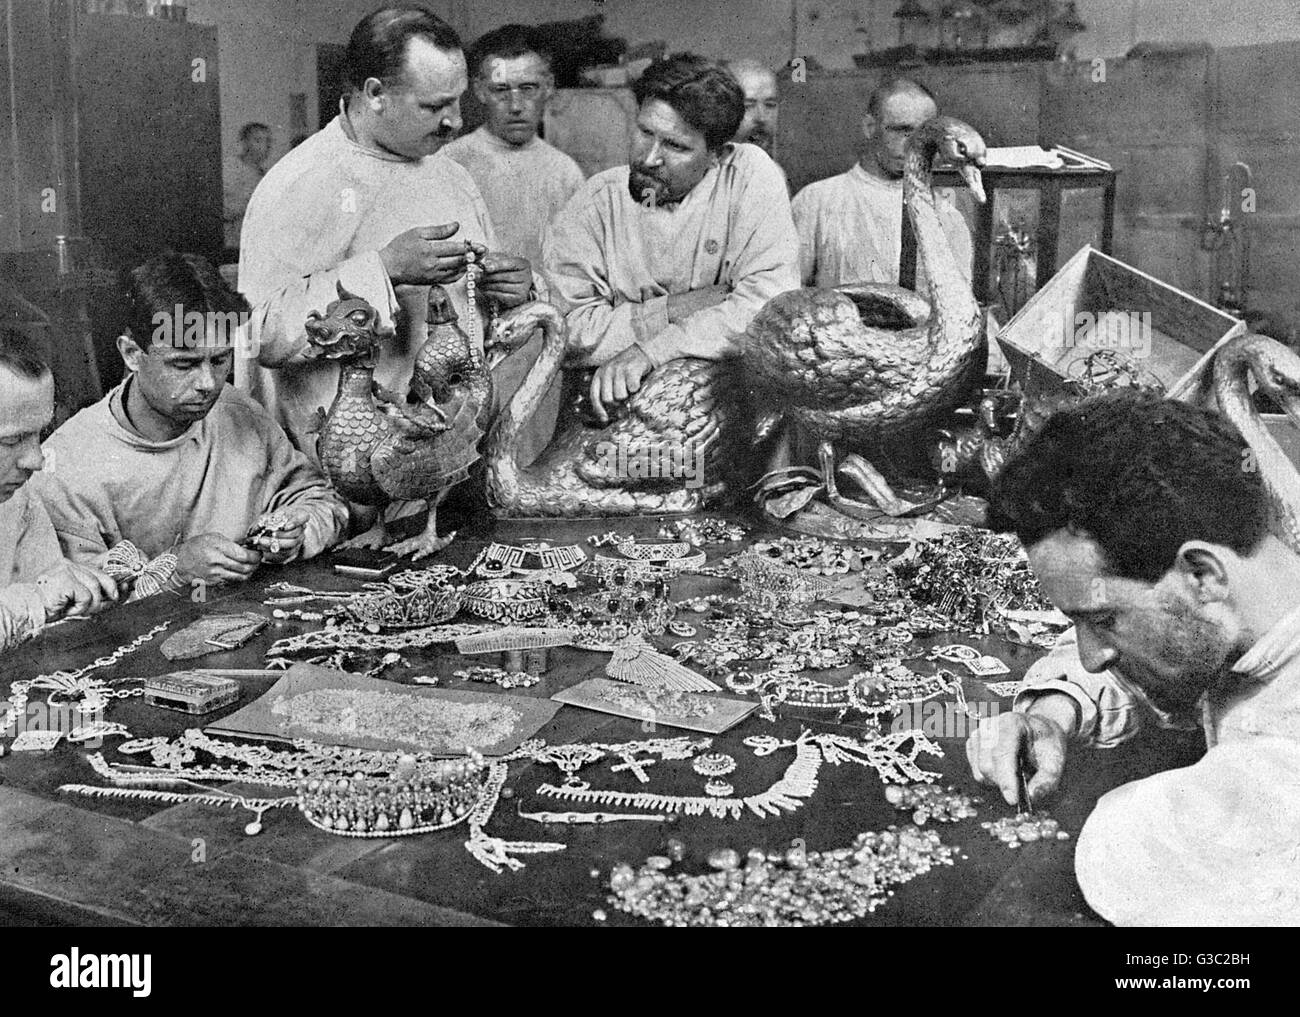 Los delegados del gobierno soviético de llevar a cabo un inventario de la colección de objetos preciosos desenterrados en el Palacio de la Youssoupof (que alberga un museo de historia militar), que, según se cree, por valor de 50 millones de rublos. Fecha: 1925 Foto de stock